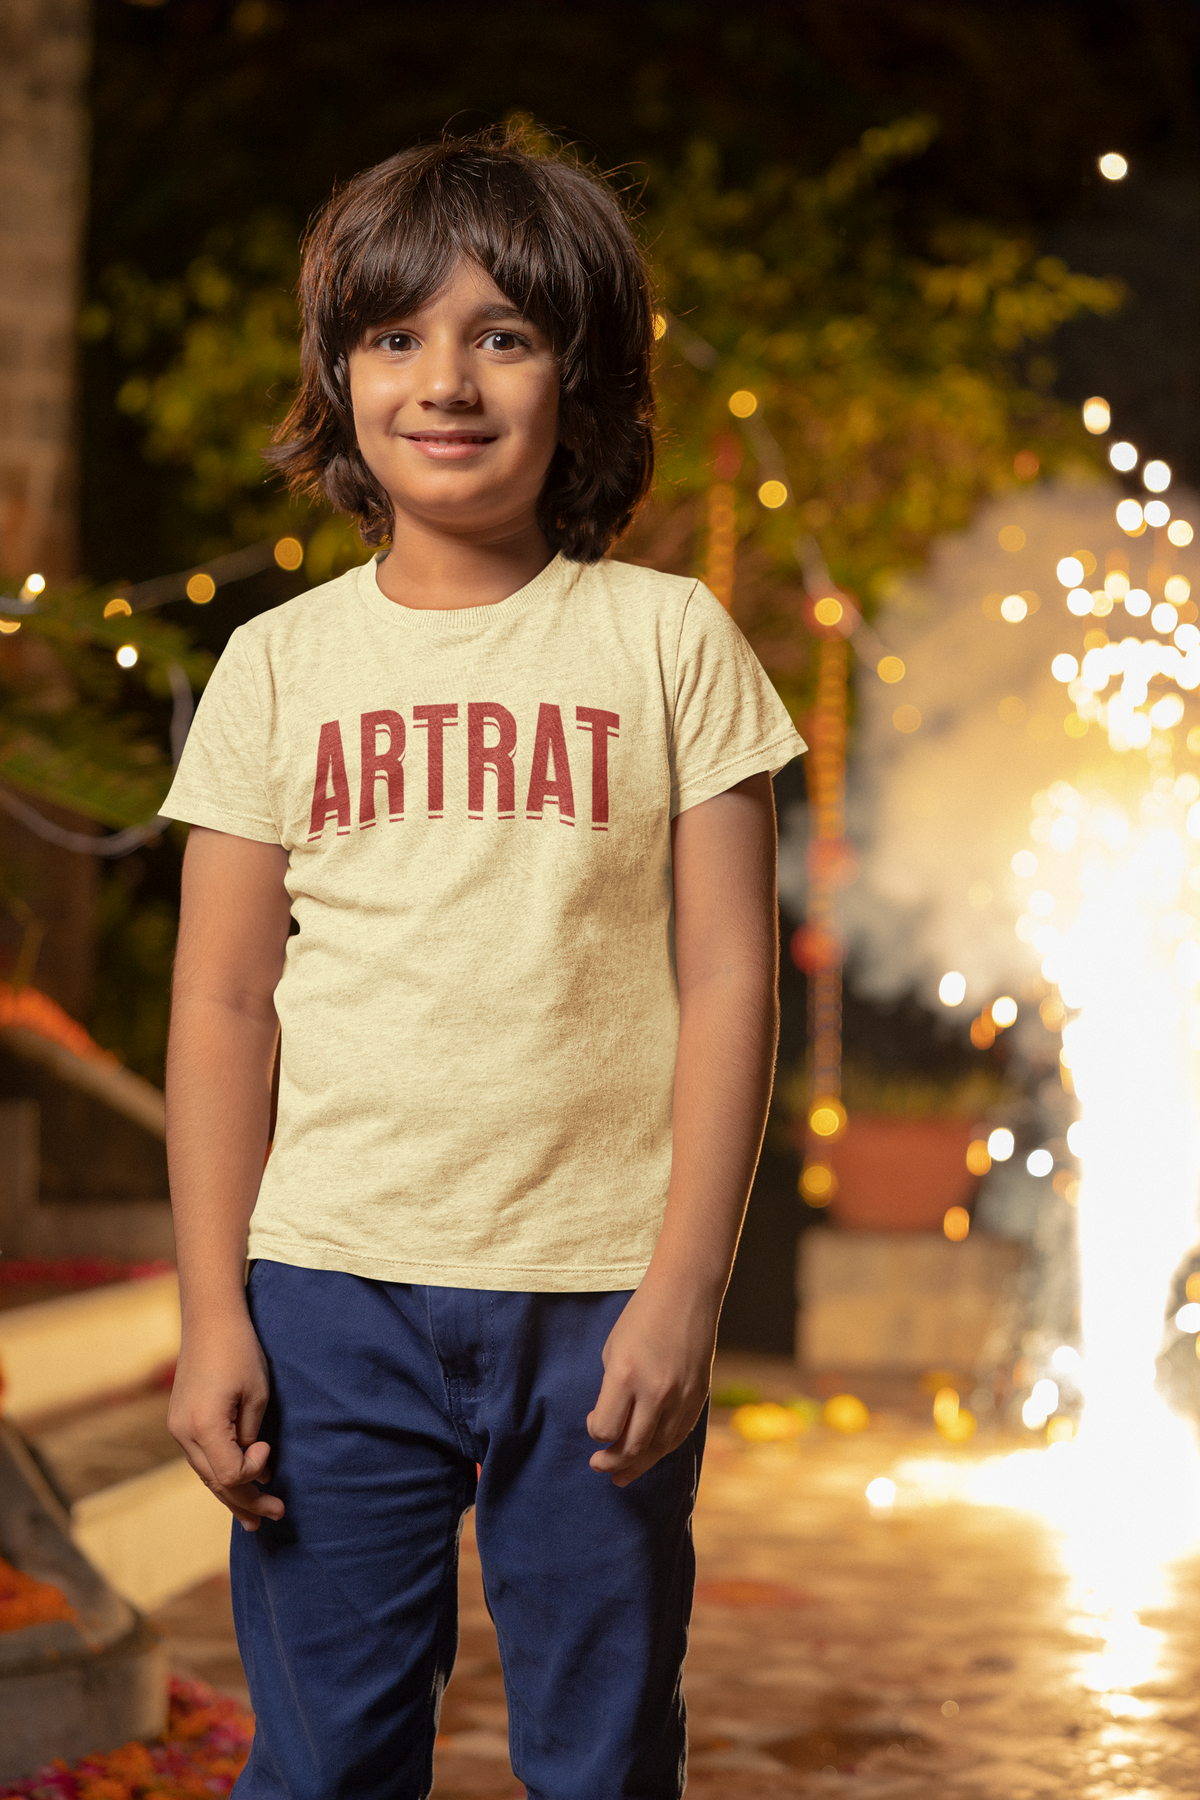 Kids ArtRat Logo Tee Shirt — Soft Blue and Light Yellow —  Short Sleeve Tee